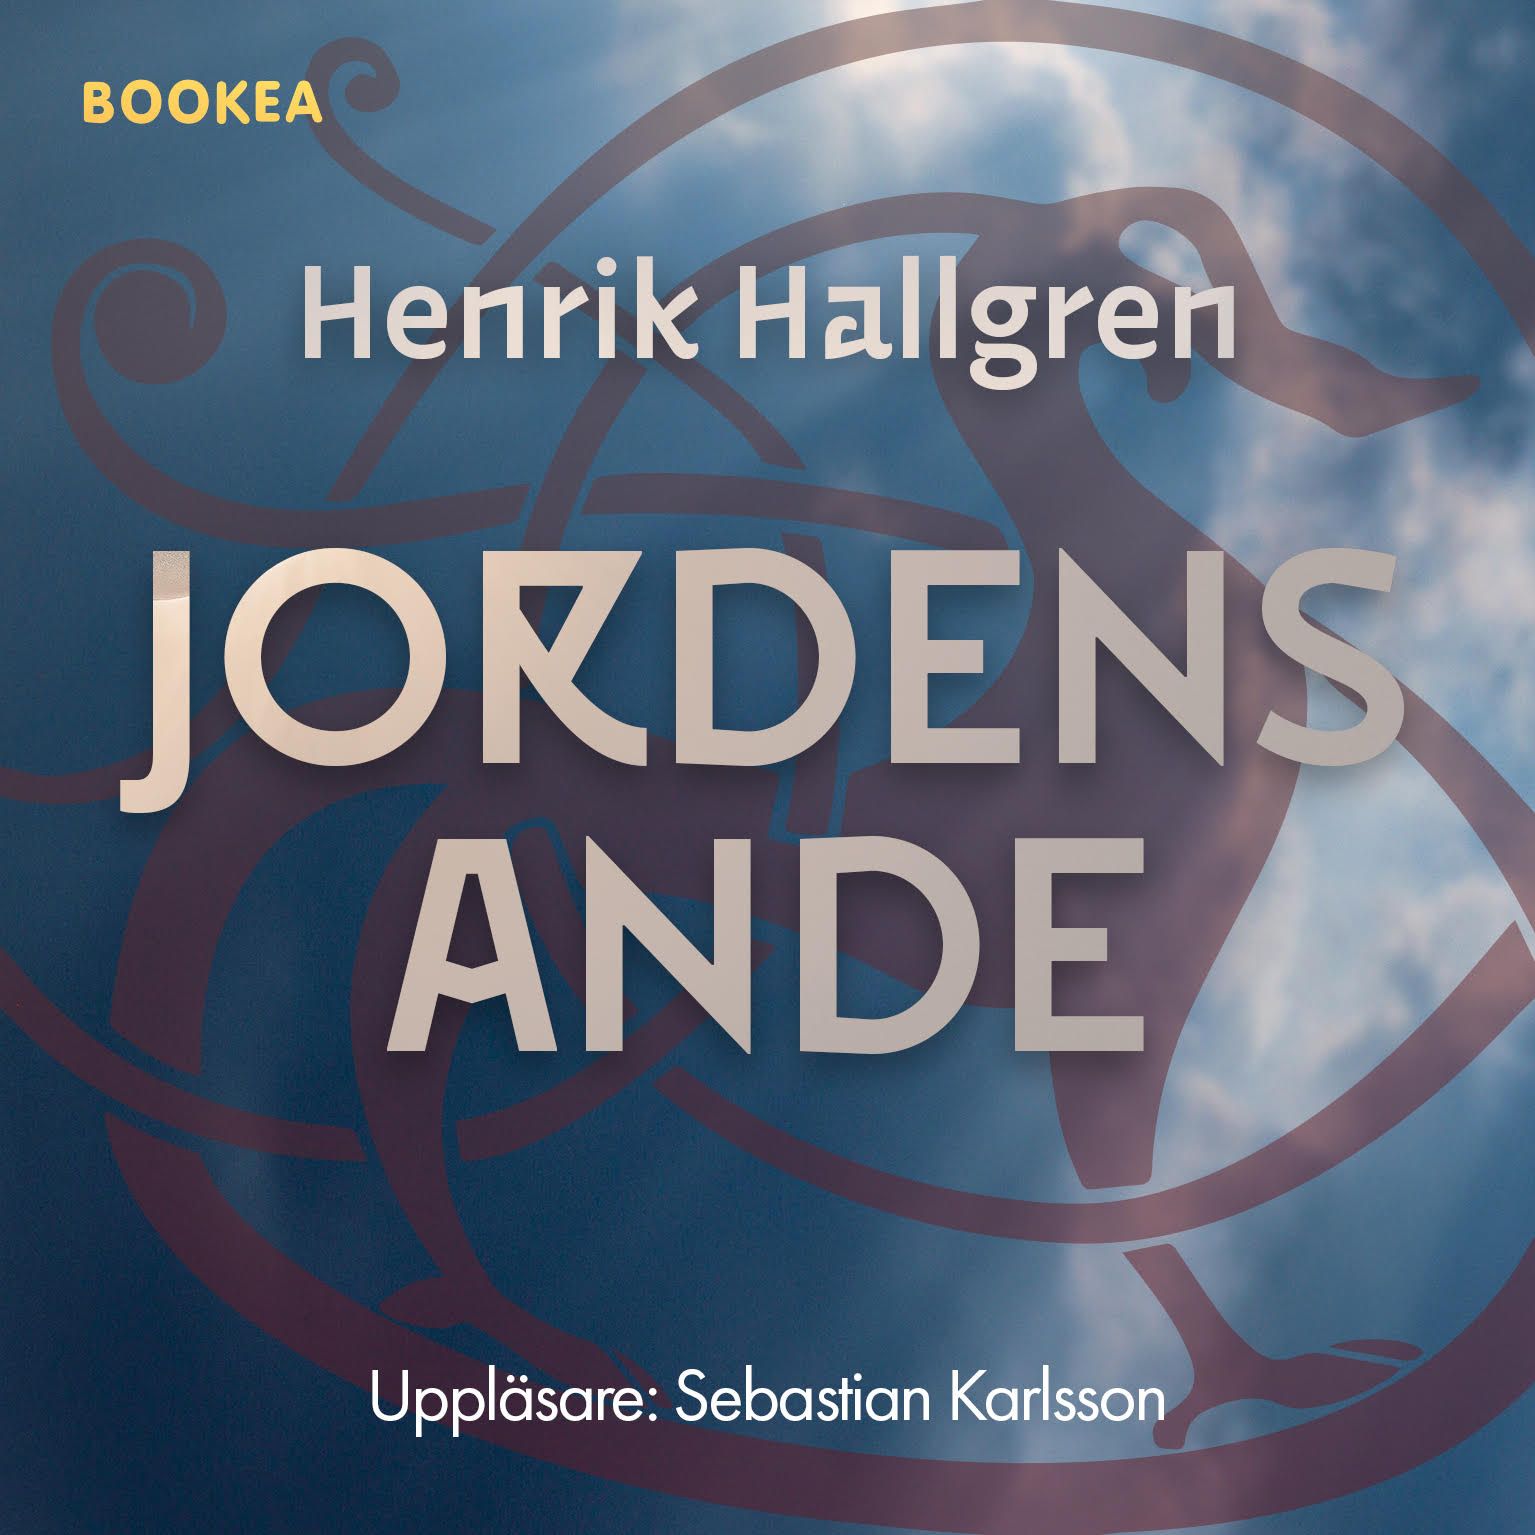 Jordens ande, ljudbok av Henrik Hallgren